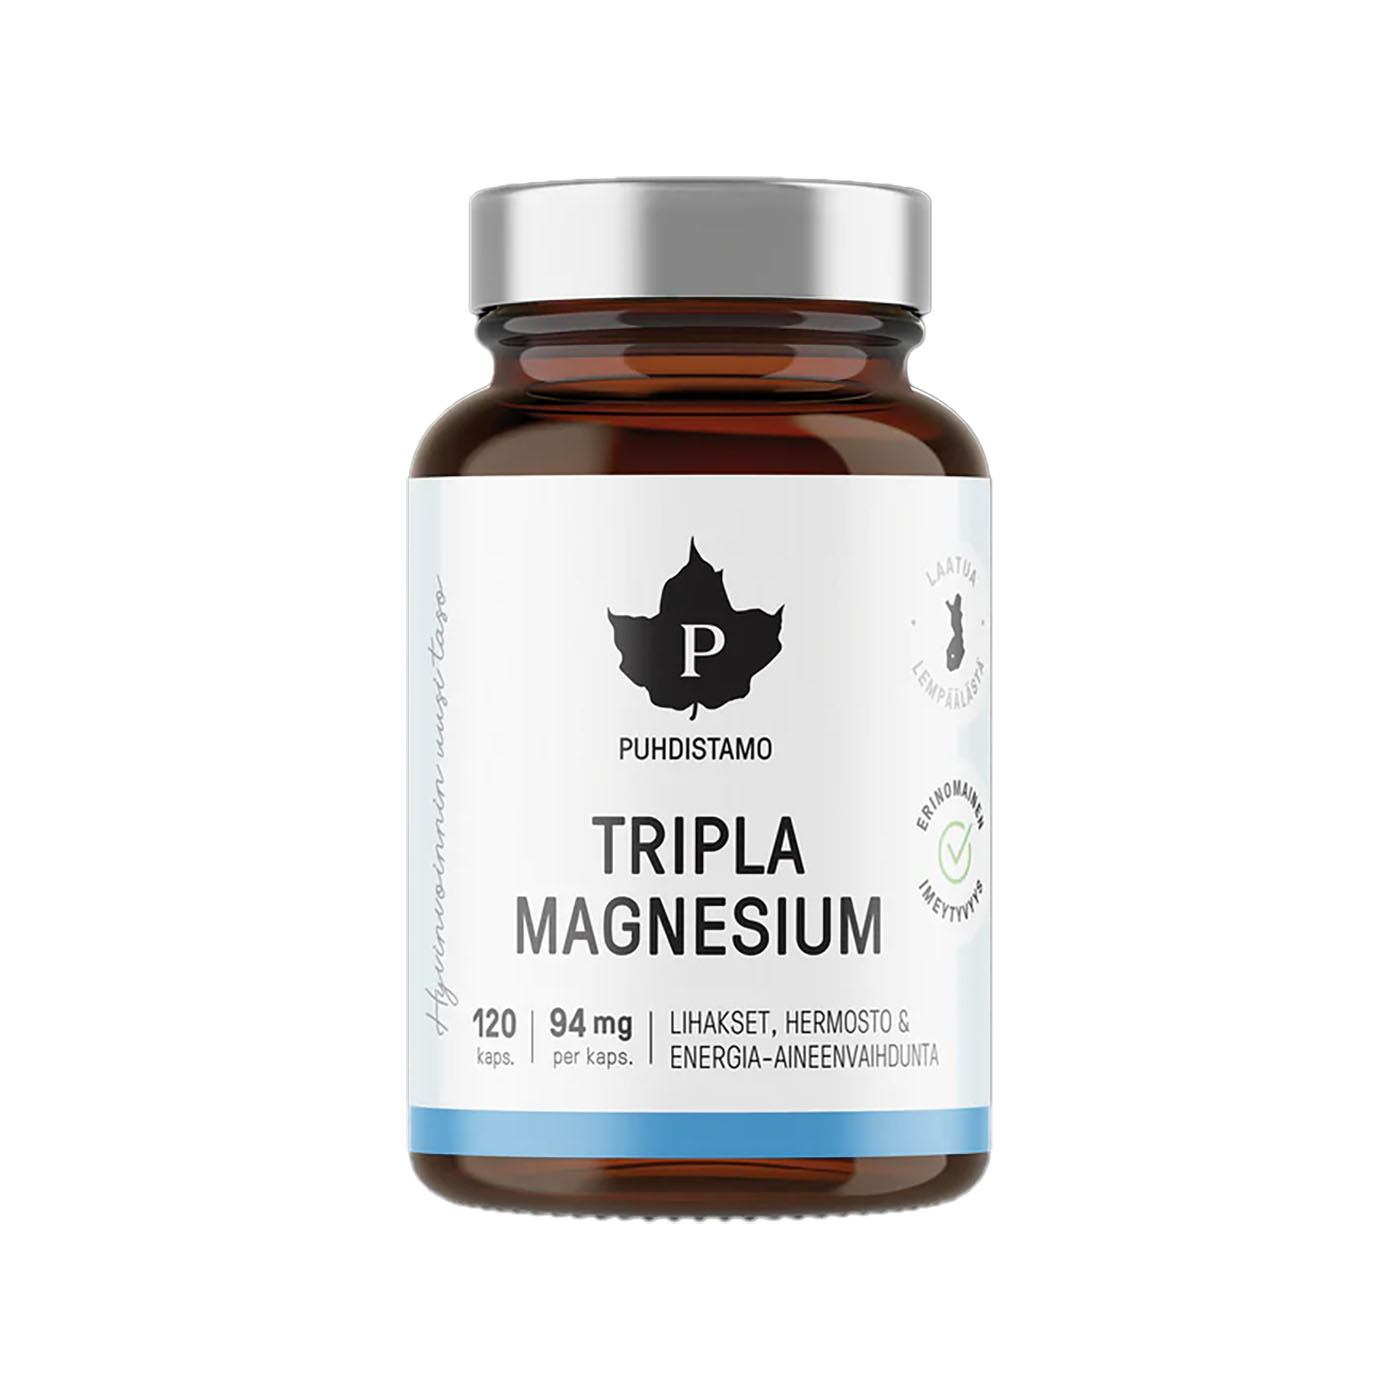 Triple magnesium supplement